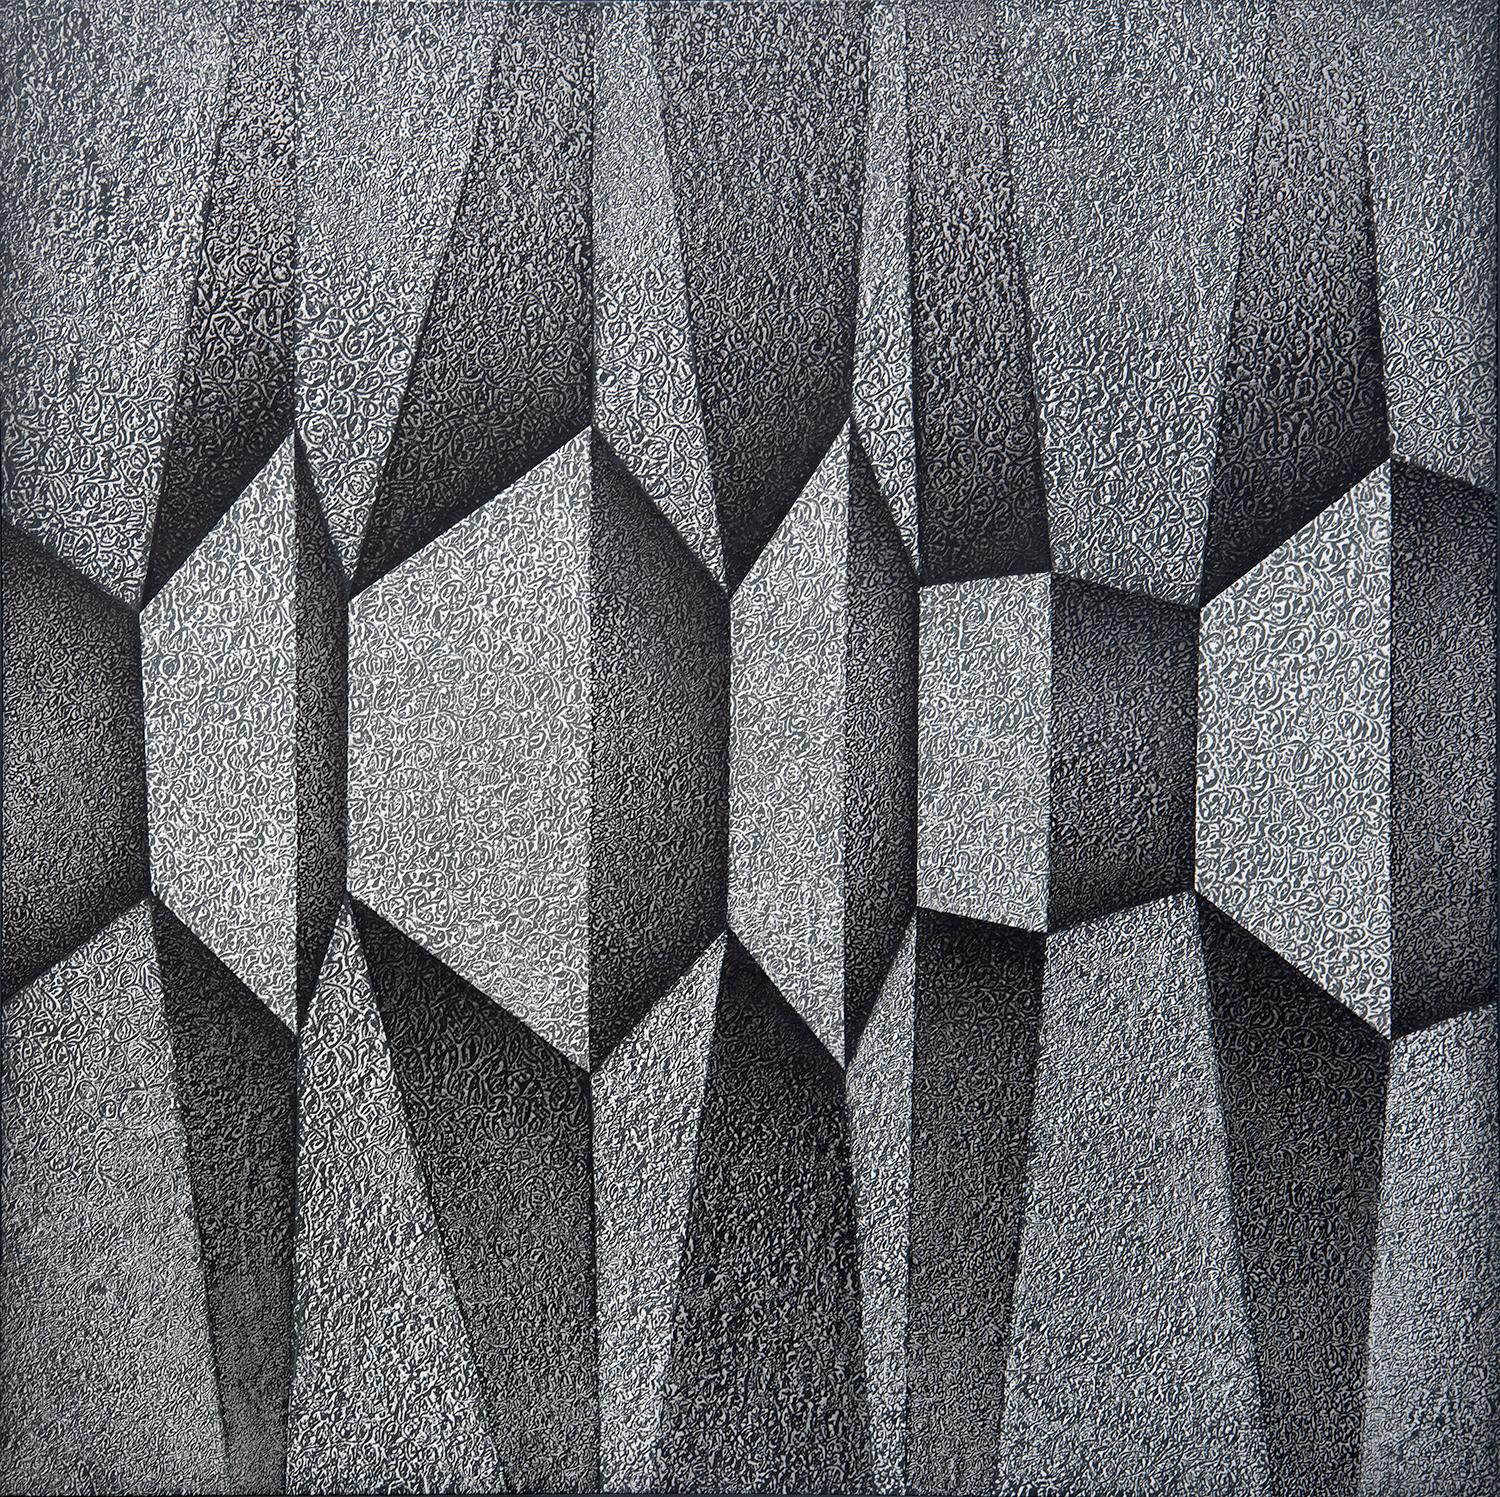 Abstract Painting Bill Maggio - Grande peinture abstraite géométrique abstraite contemporaine en noir et blanc, musée détaillé